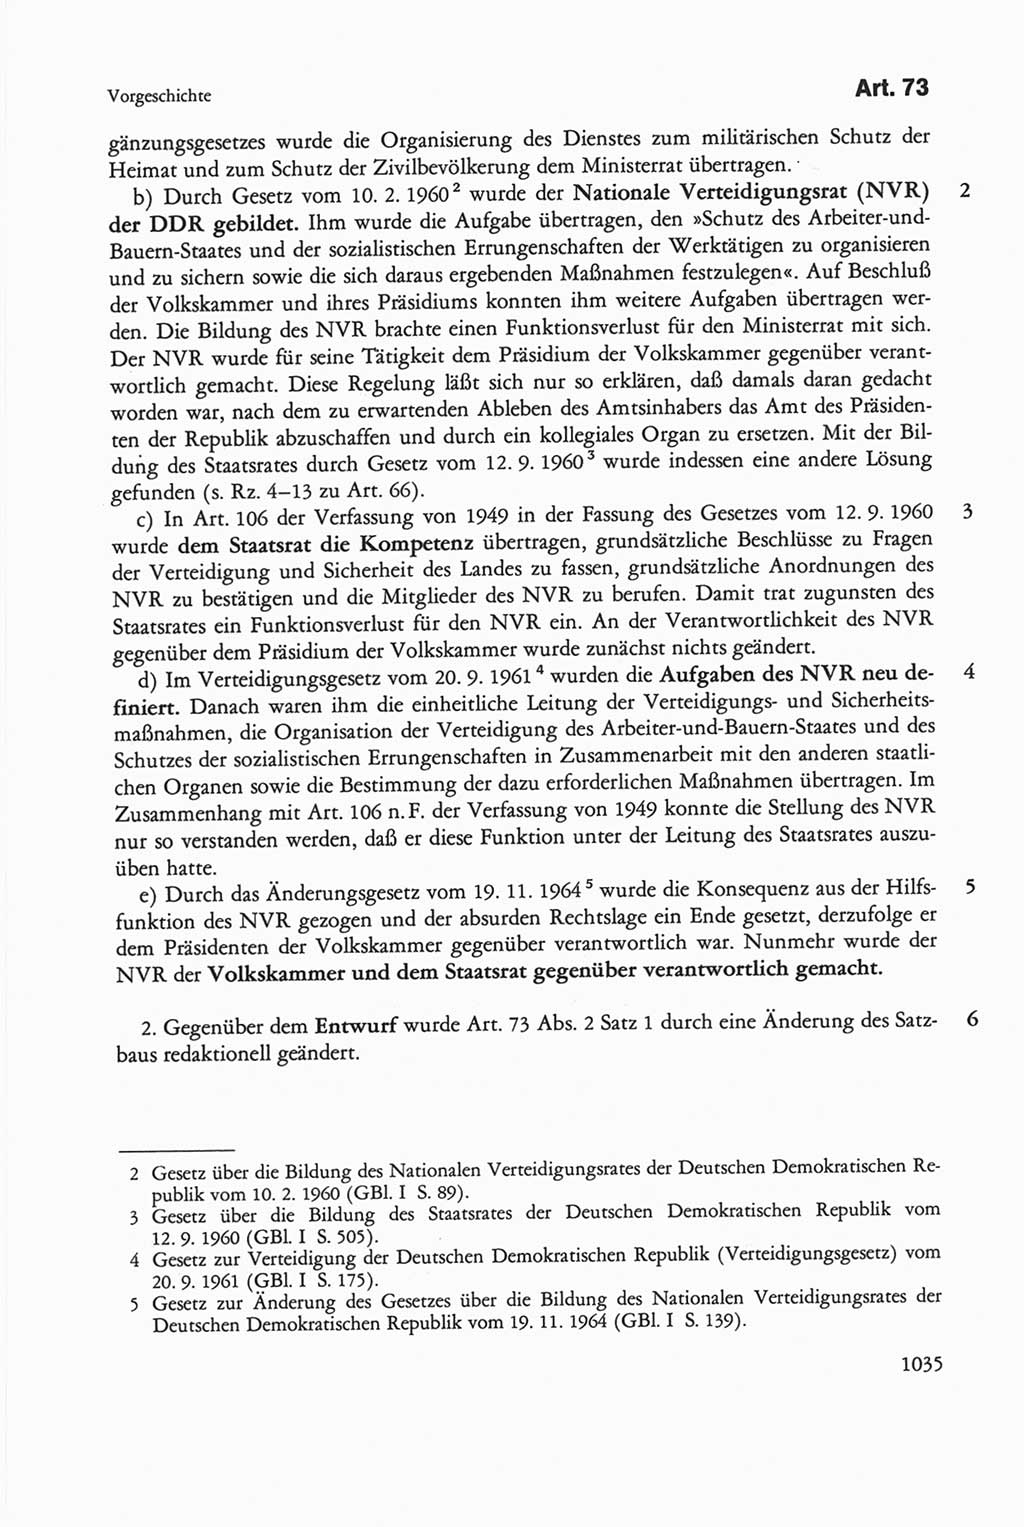 Die sozialistische Verfassung der Deutschen Demokratischen Republik (DDR), Kommentar 1982, Seite 1035 (Soz. Verf. DDR Komm. 1982, S. 1035)